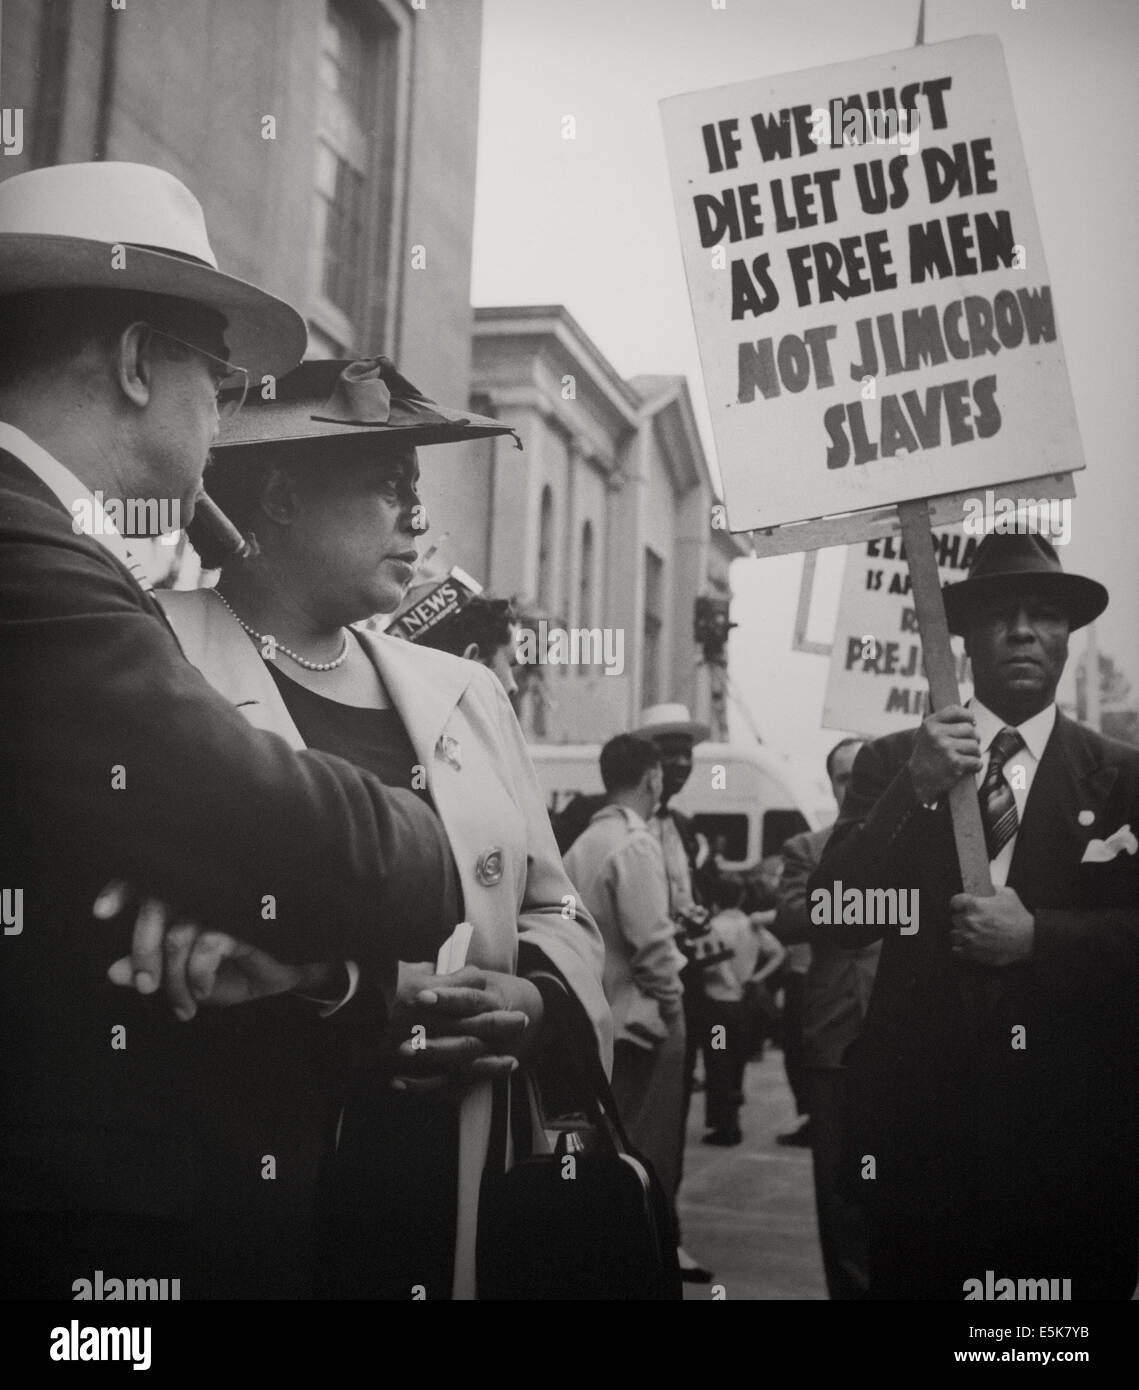 Protesta per i diritti civili degli anni sessanta americano africano - Nero - uomo con il segno " se dobbiamo morire Moriamo come uomini liberi non Jim Crow schiavi Foto Stock